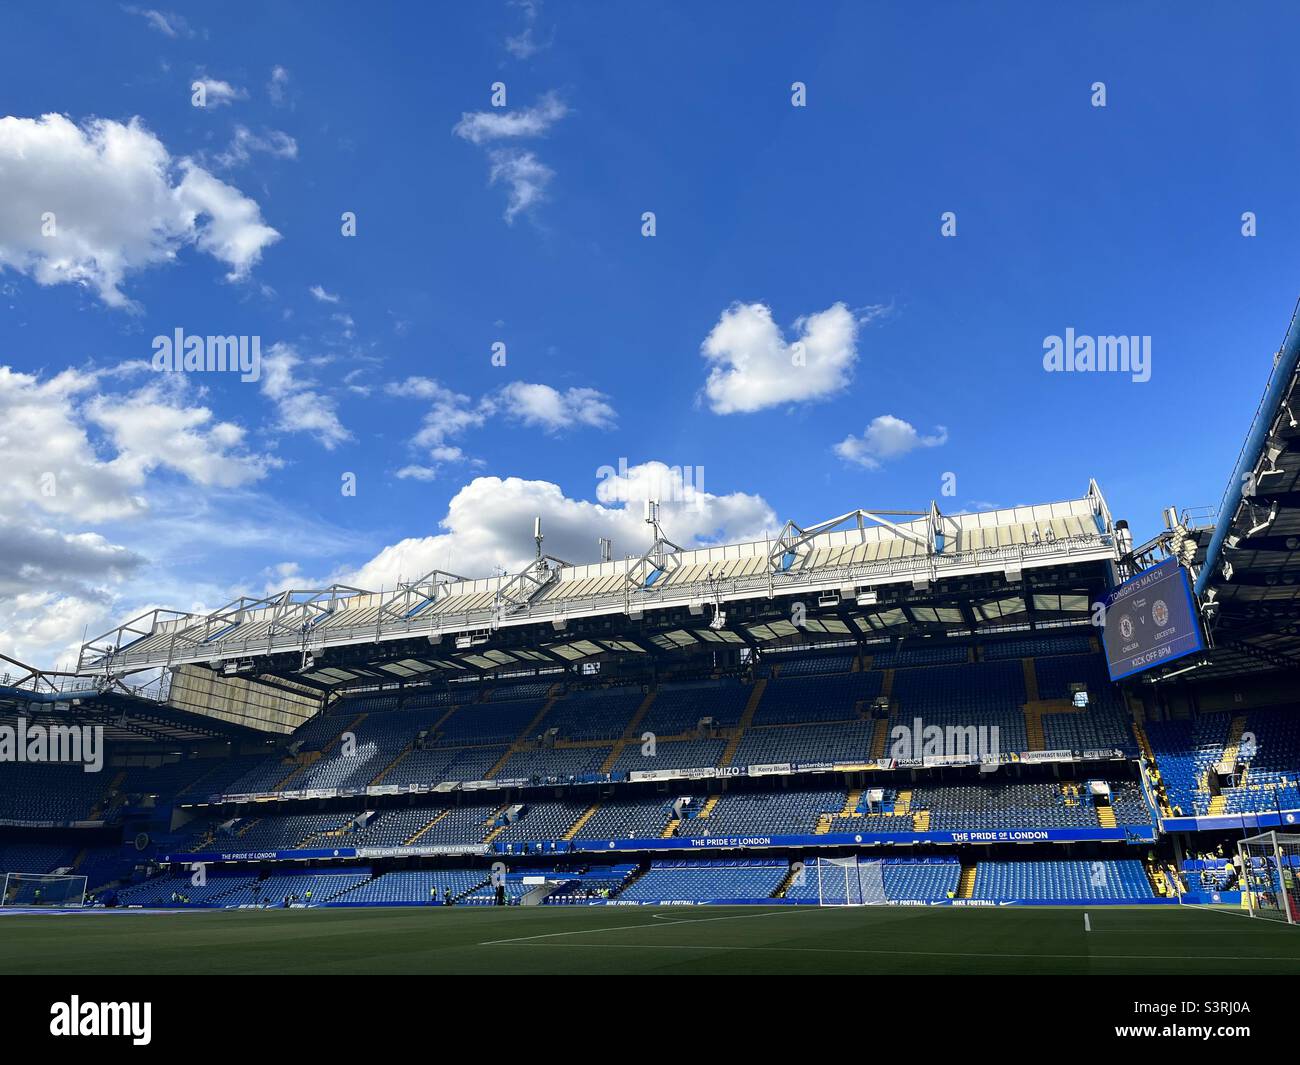 Vue générale sur le stade Stamford Bridge, qui abrite le club de football de Chelsea à Londres. Chelsea joue dans la Premier League anglaise. Banque D'Images